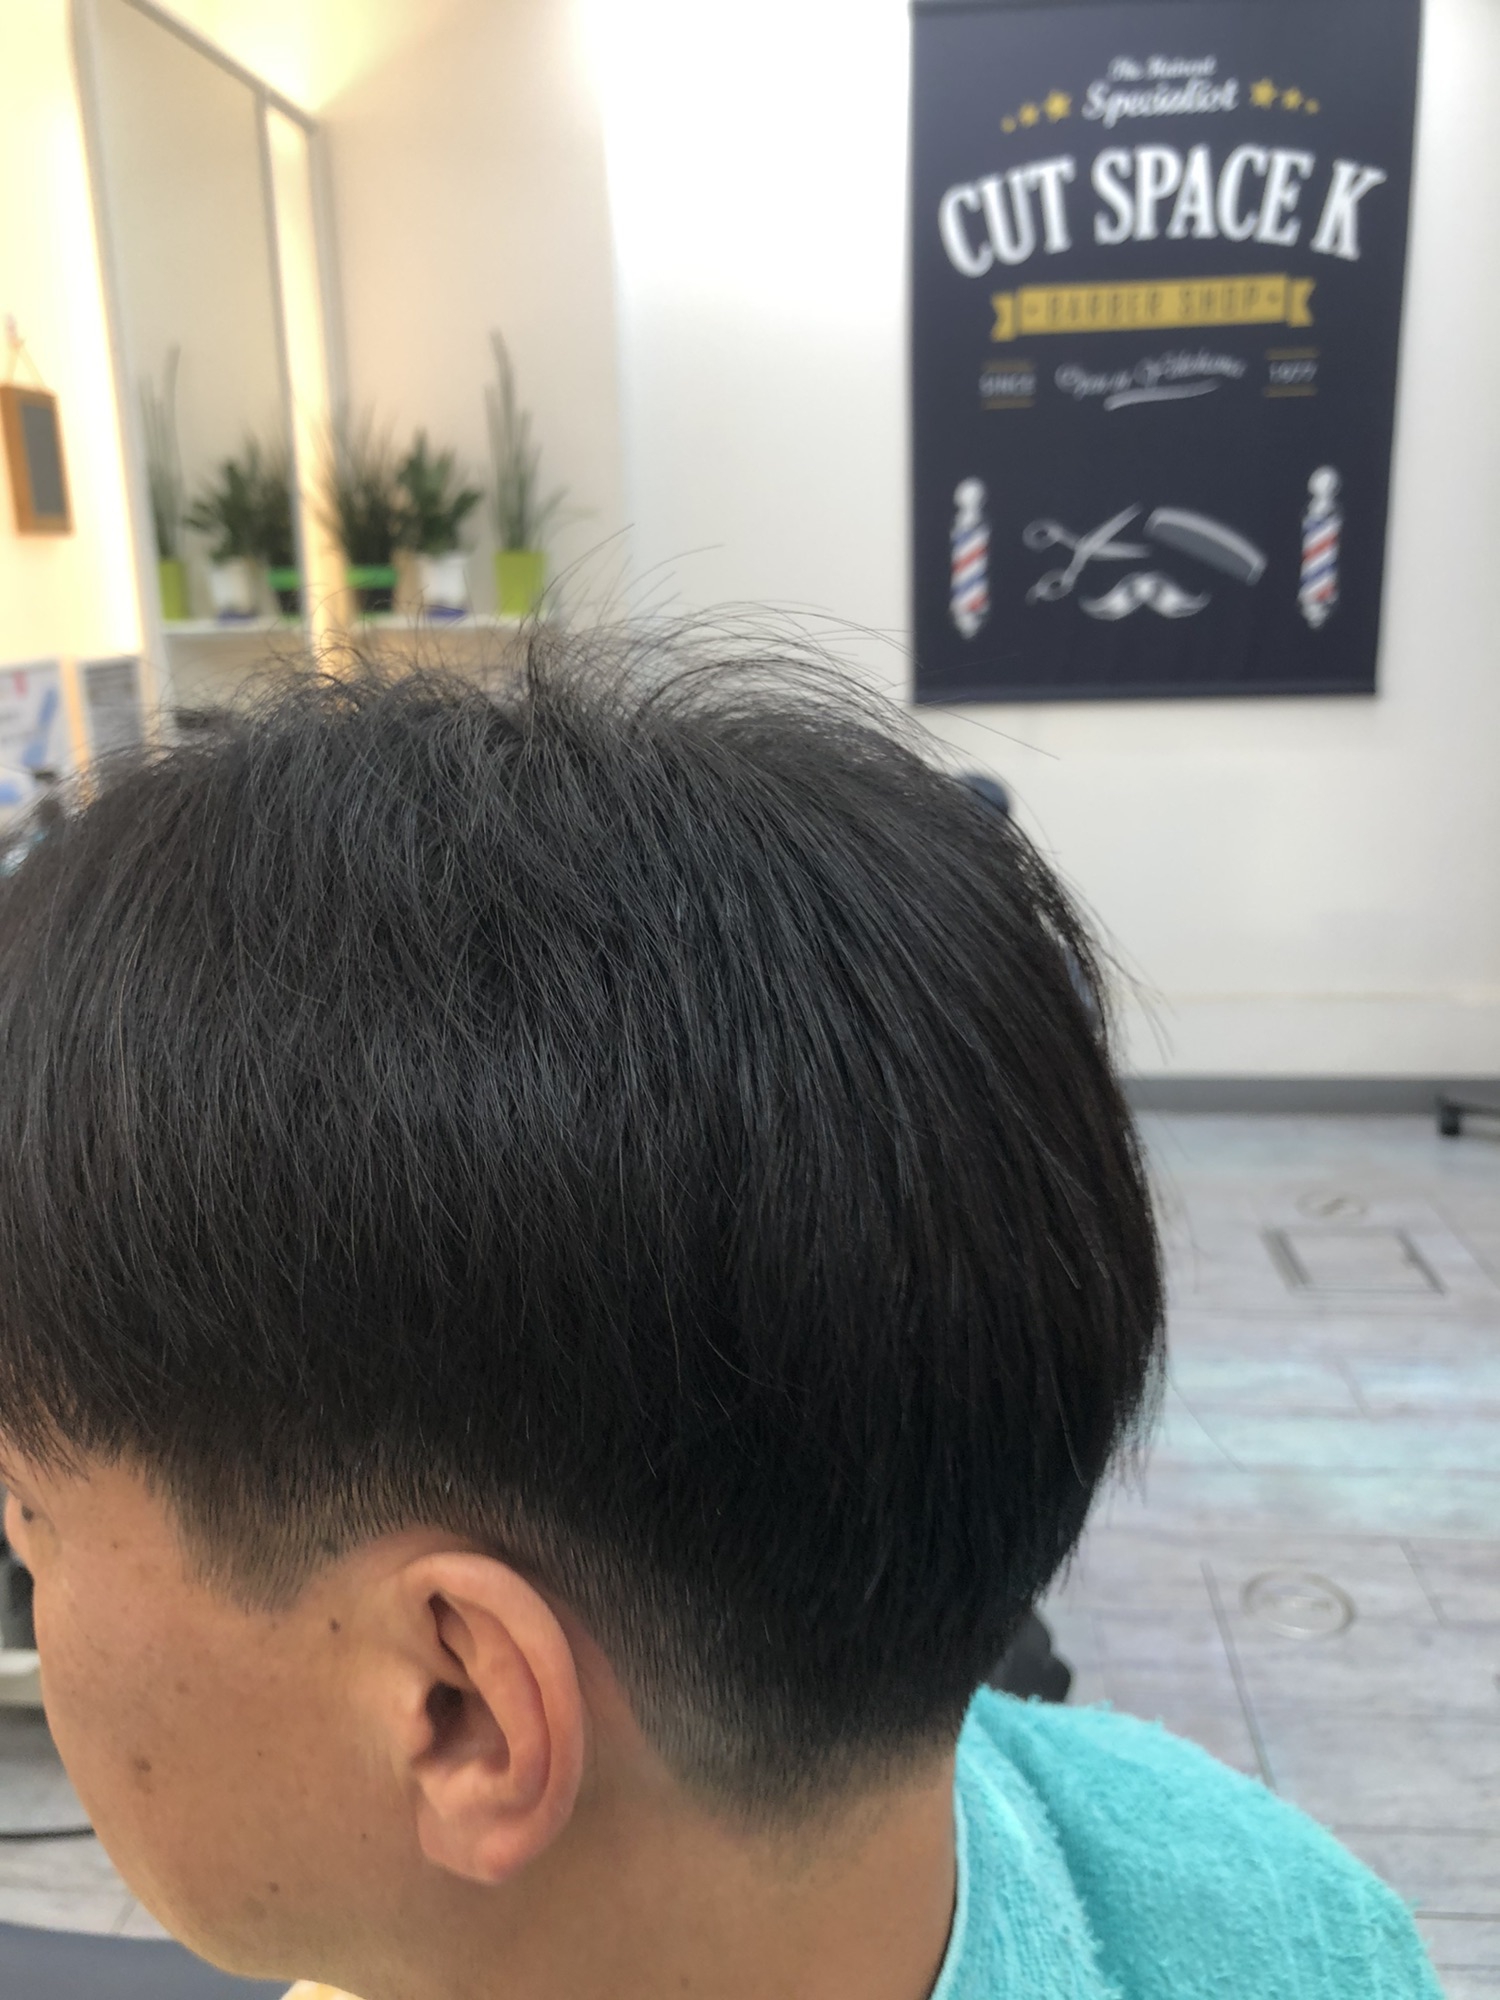 メンズ ミディアムカット 総バサミ 理容師試験 カットスペース K Barber Shop 横浜市港南区の理容室 上永谷と下永谷の中間地にある理髪店です フェードカットやスキンフェードなどのメンズカットに定評あり 駐車場２台分完備